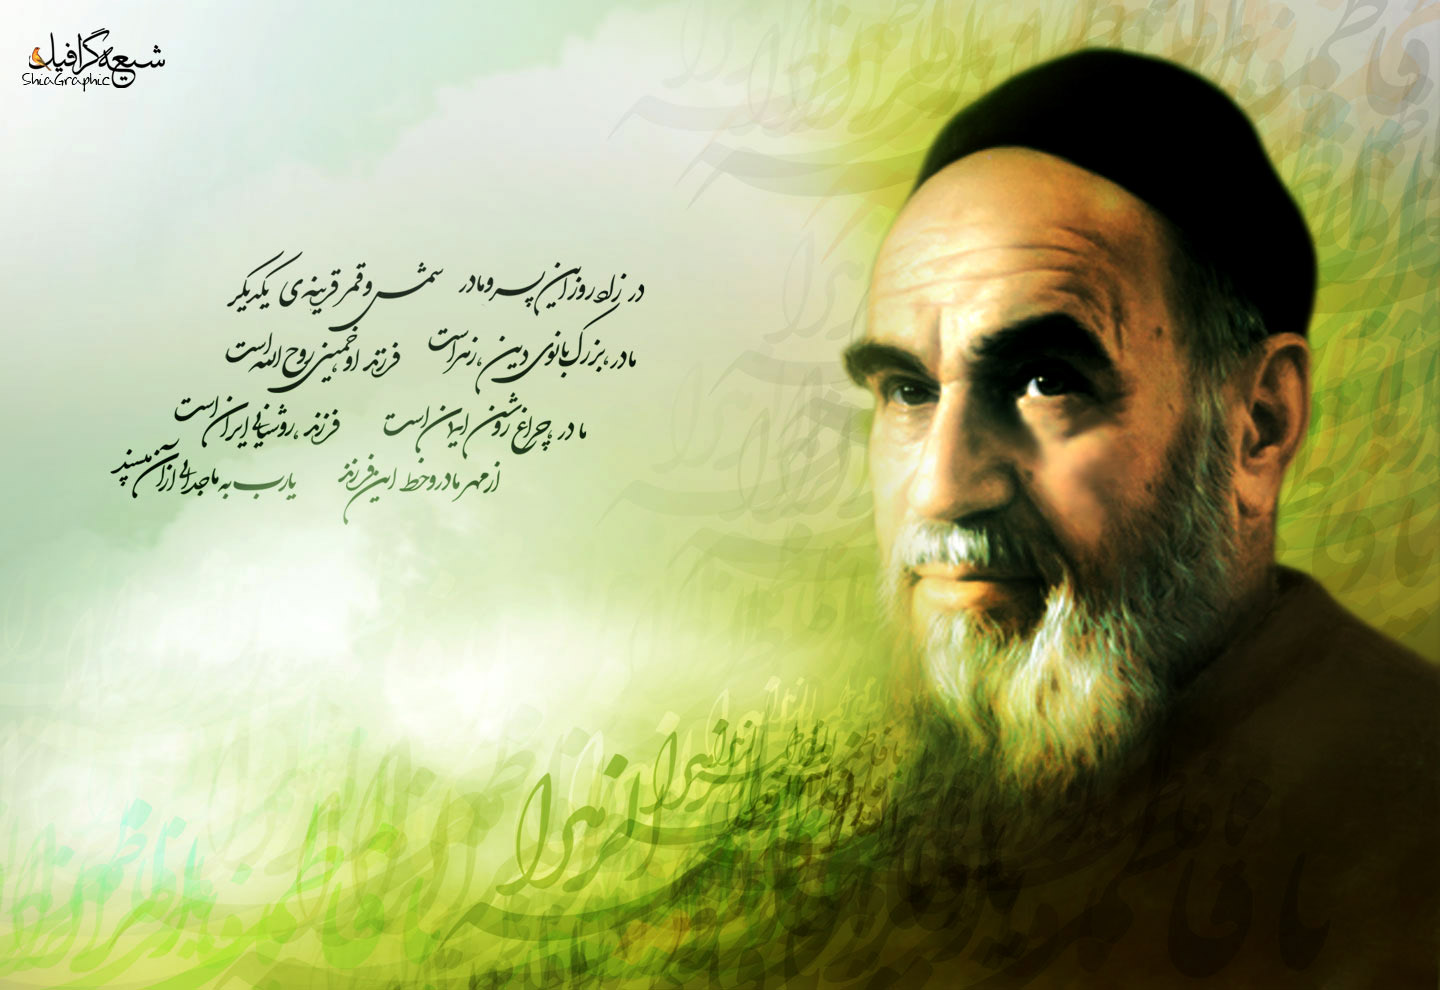 shia_graphic_emam-khomeini_89.jpg, 200K - shia_graphic_emam-khomeini_89